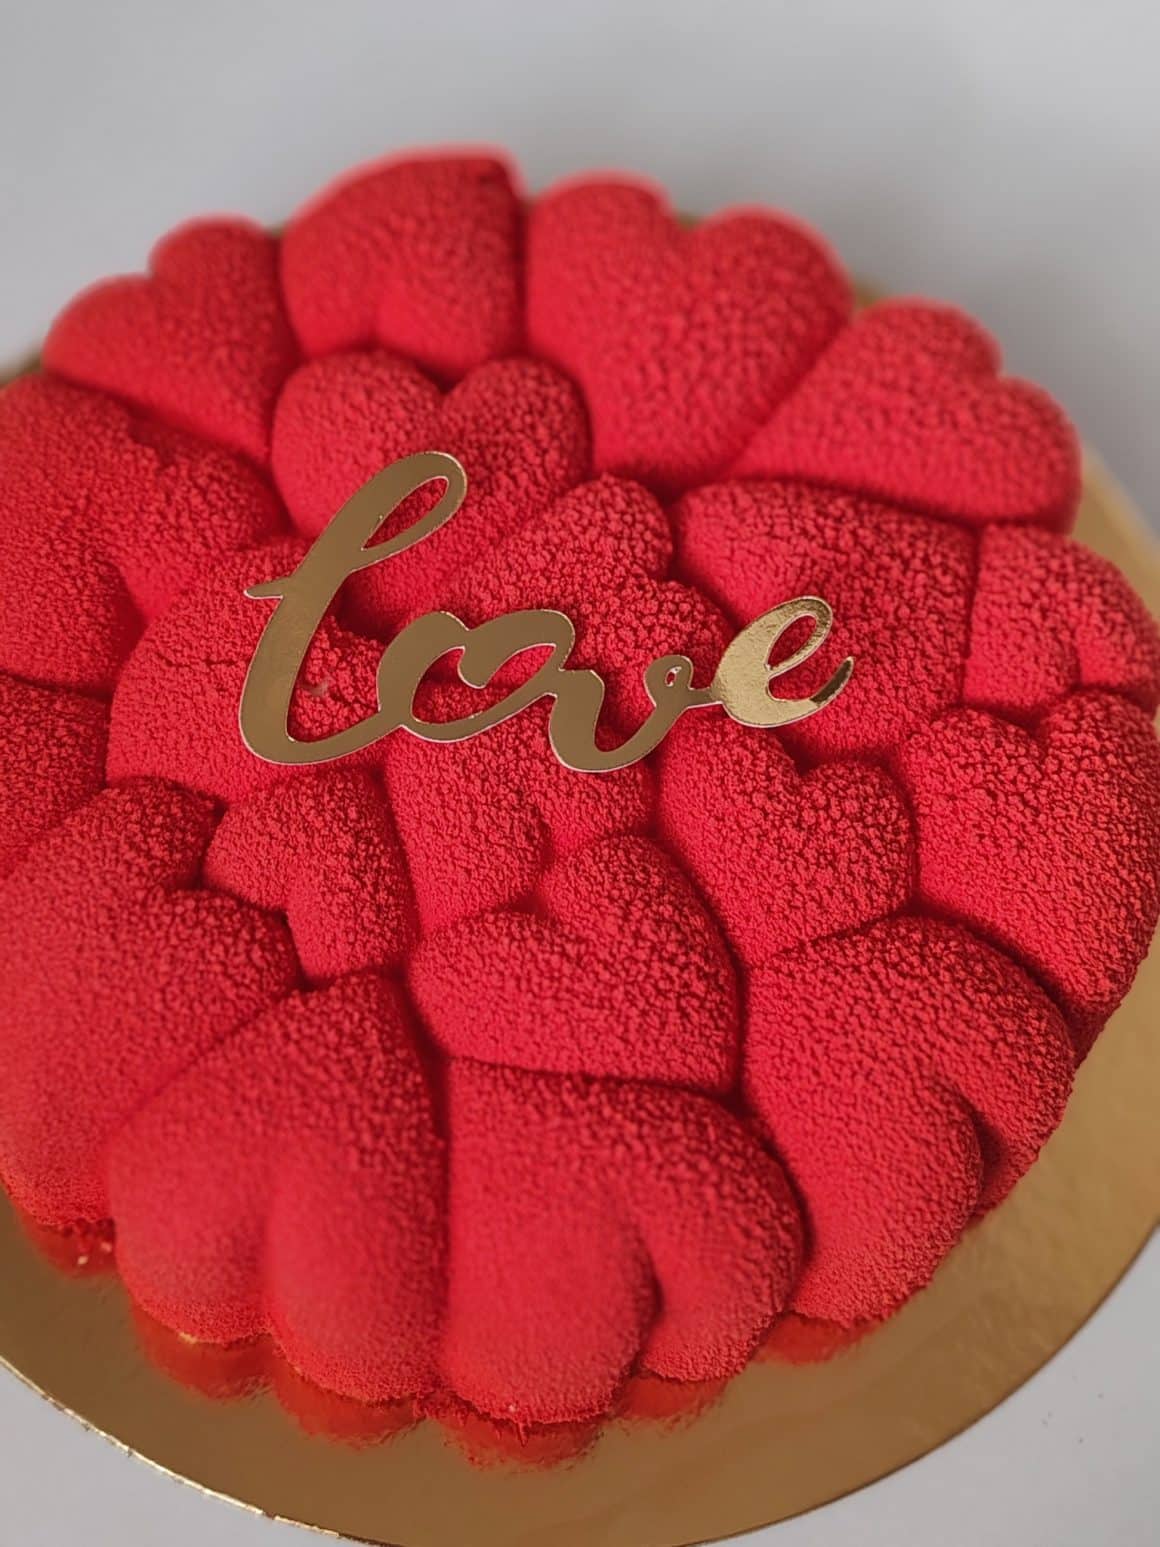 Tort Eros – un tort mousse cu ciocolată albă belgiană, fină și dulce, și căpșunile. Un desert echilibrat și delicat. 